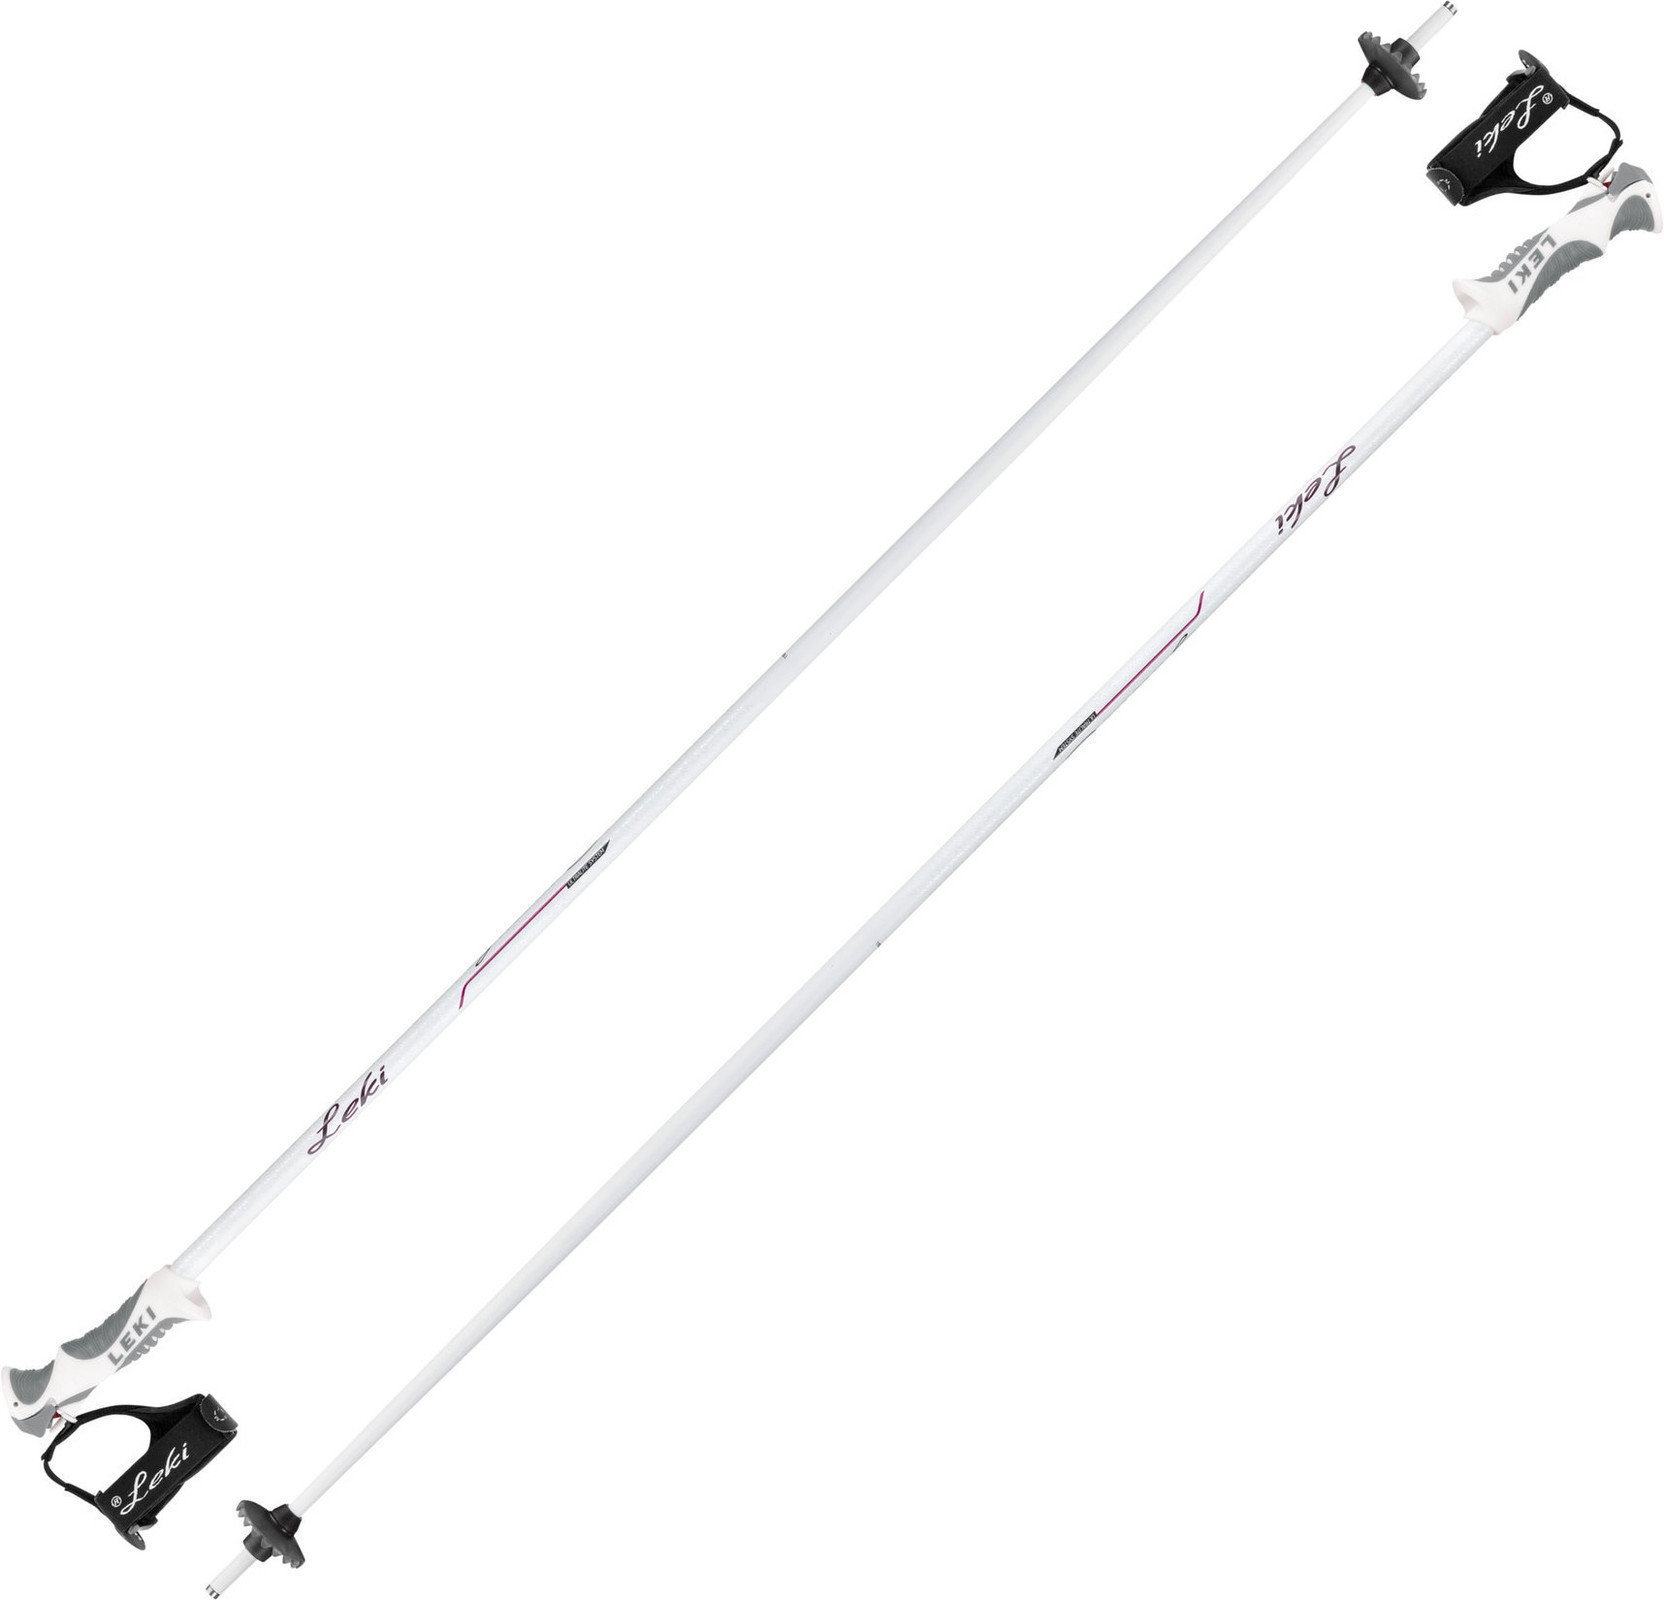 Ski Poles Leki Giulia S White/Anthracite/Berry 125 cm Ski Poles